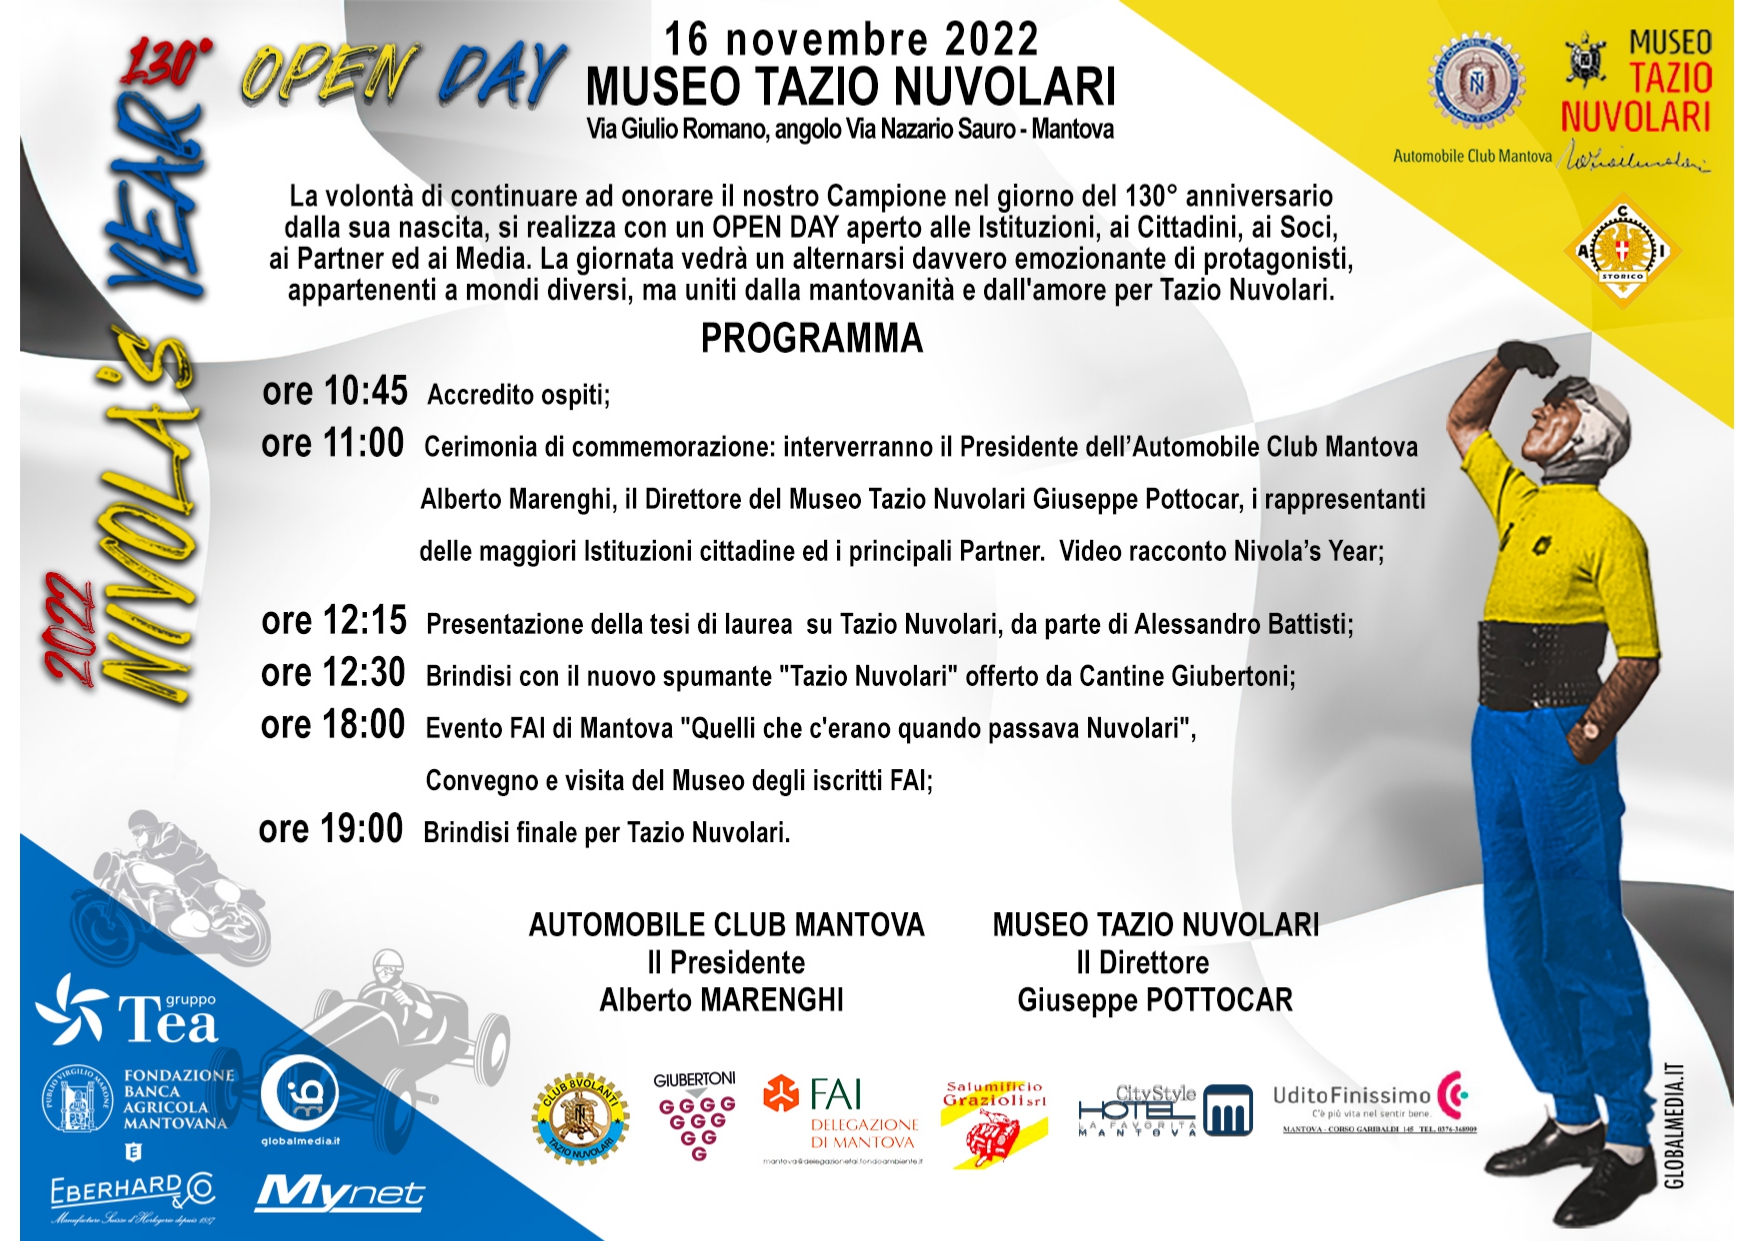 Museo Tazio Nuvolari, 13 novembre 2022 Open Day per festeggiare il 130° Anniversario della nascita di Tazio Nuvolari